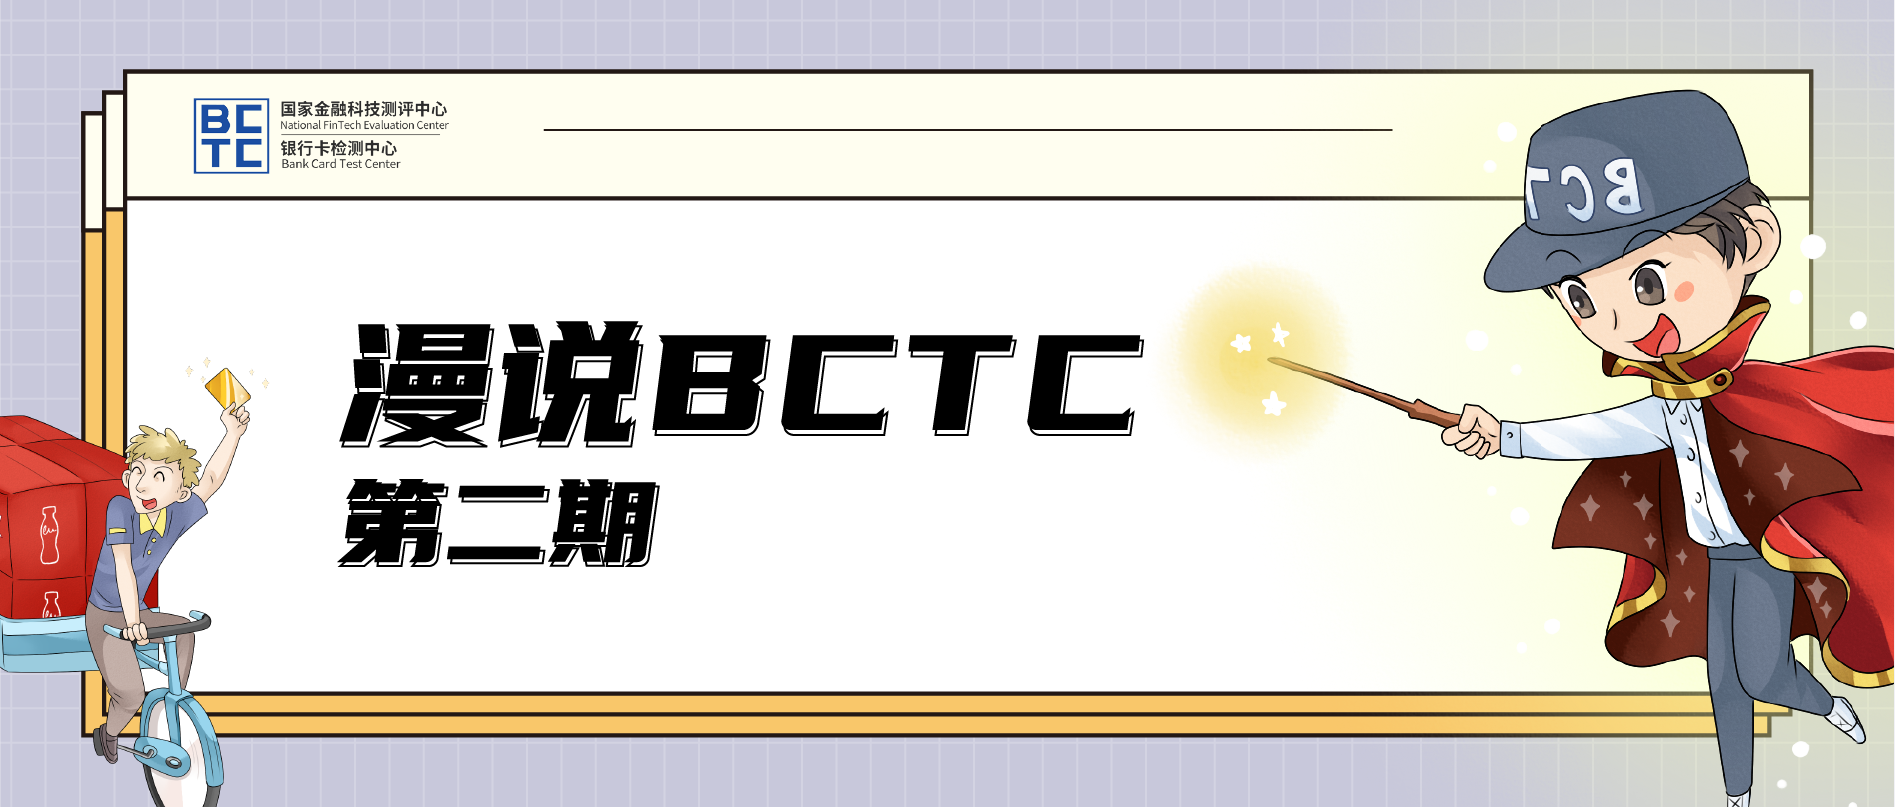 【漫说BCTC】BCTC的安全元年